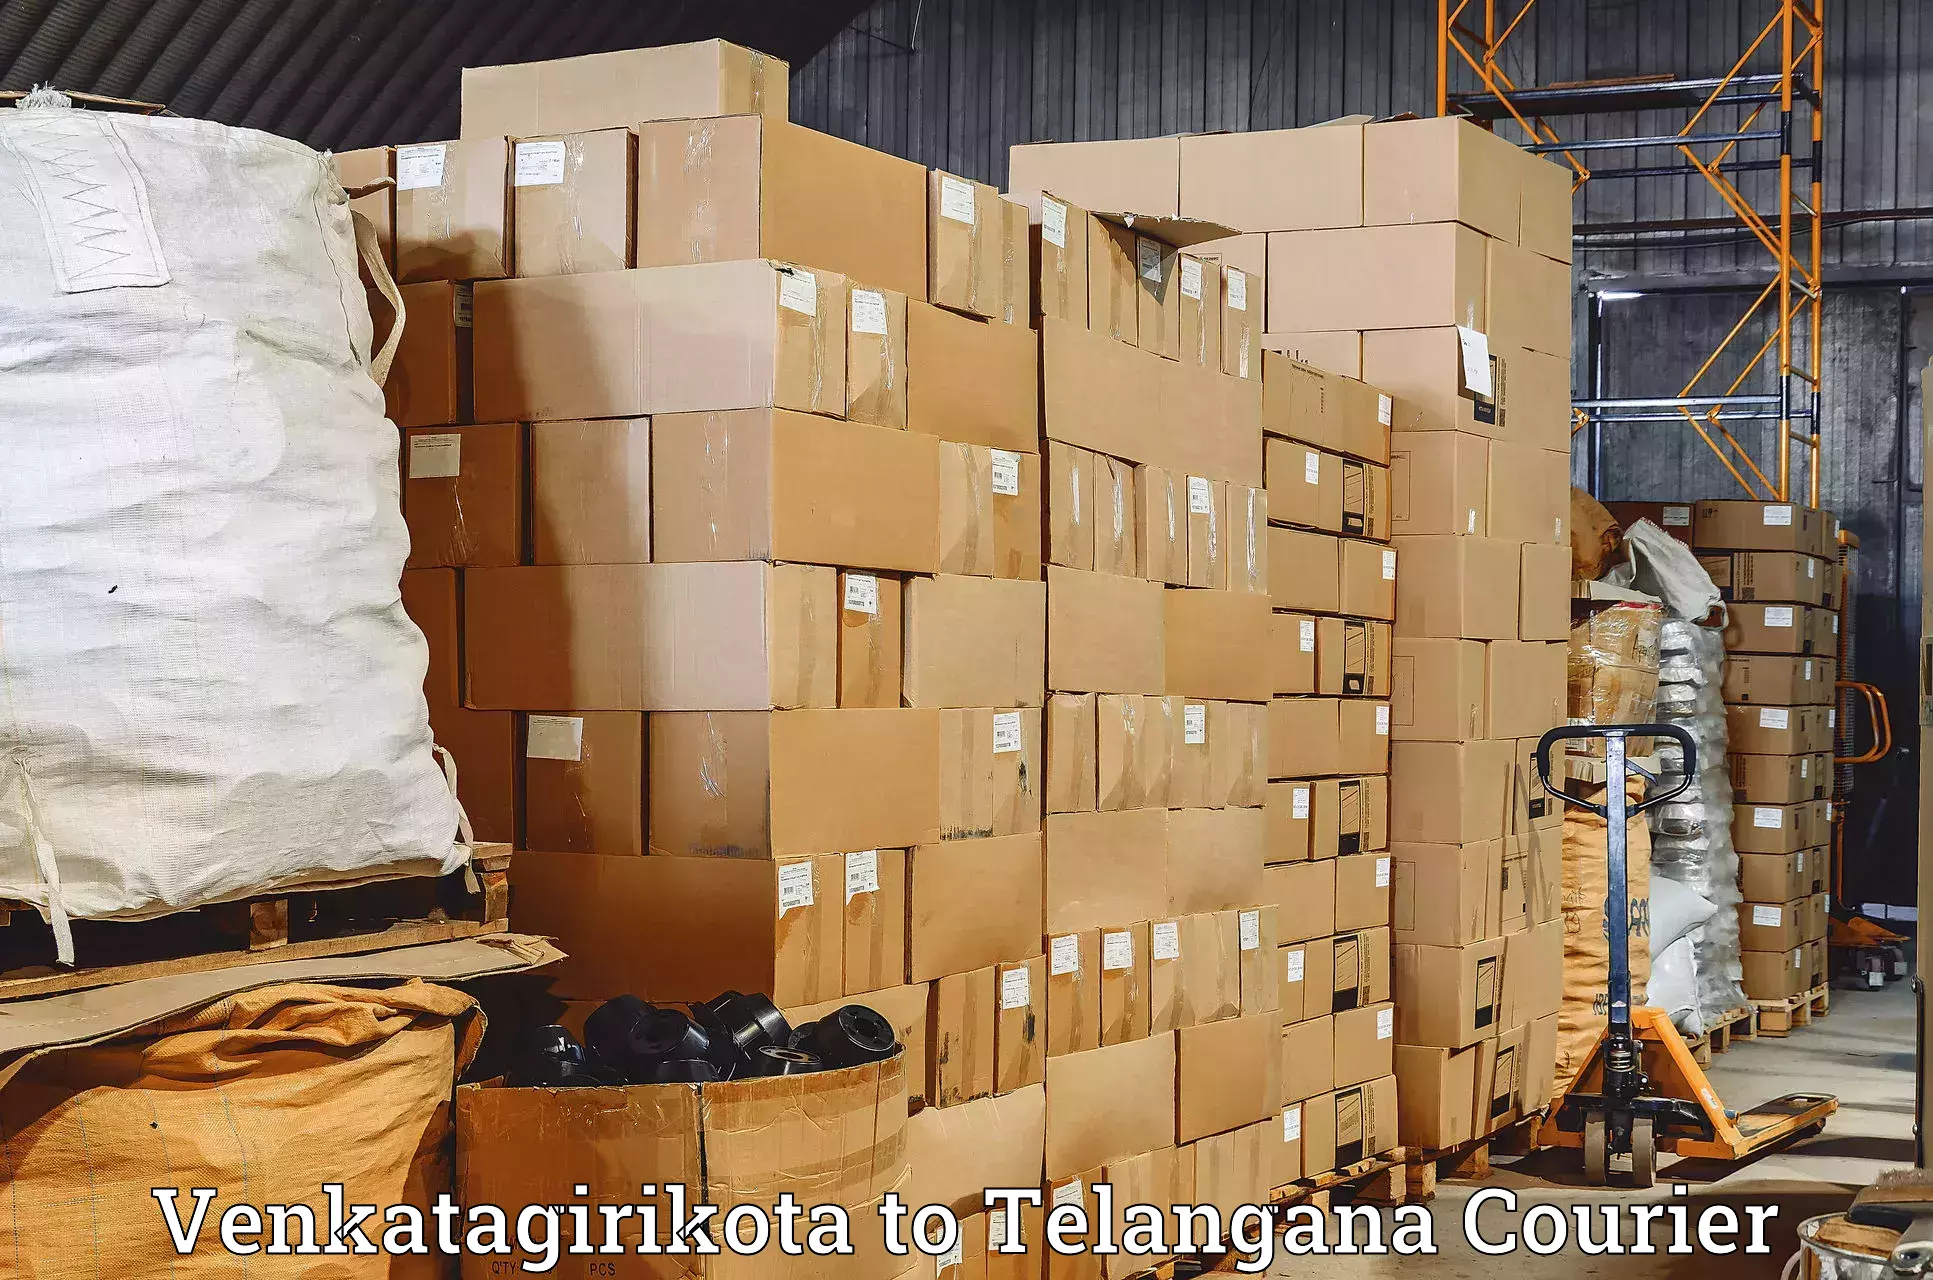 Personal parcel delivery in Venkatagirikota to Nellikuduru